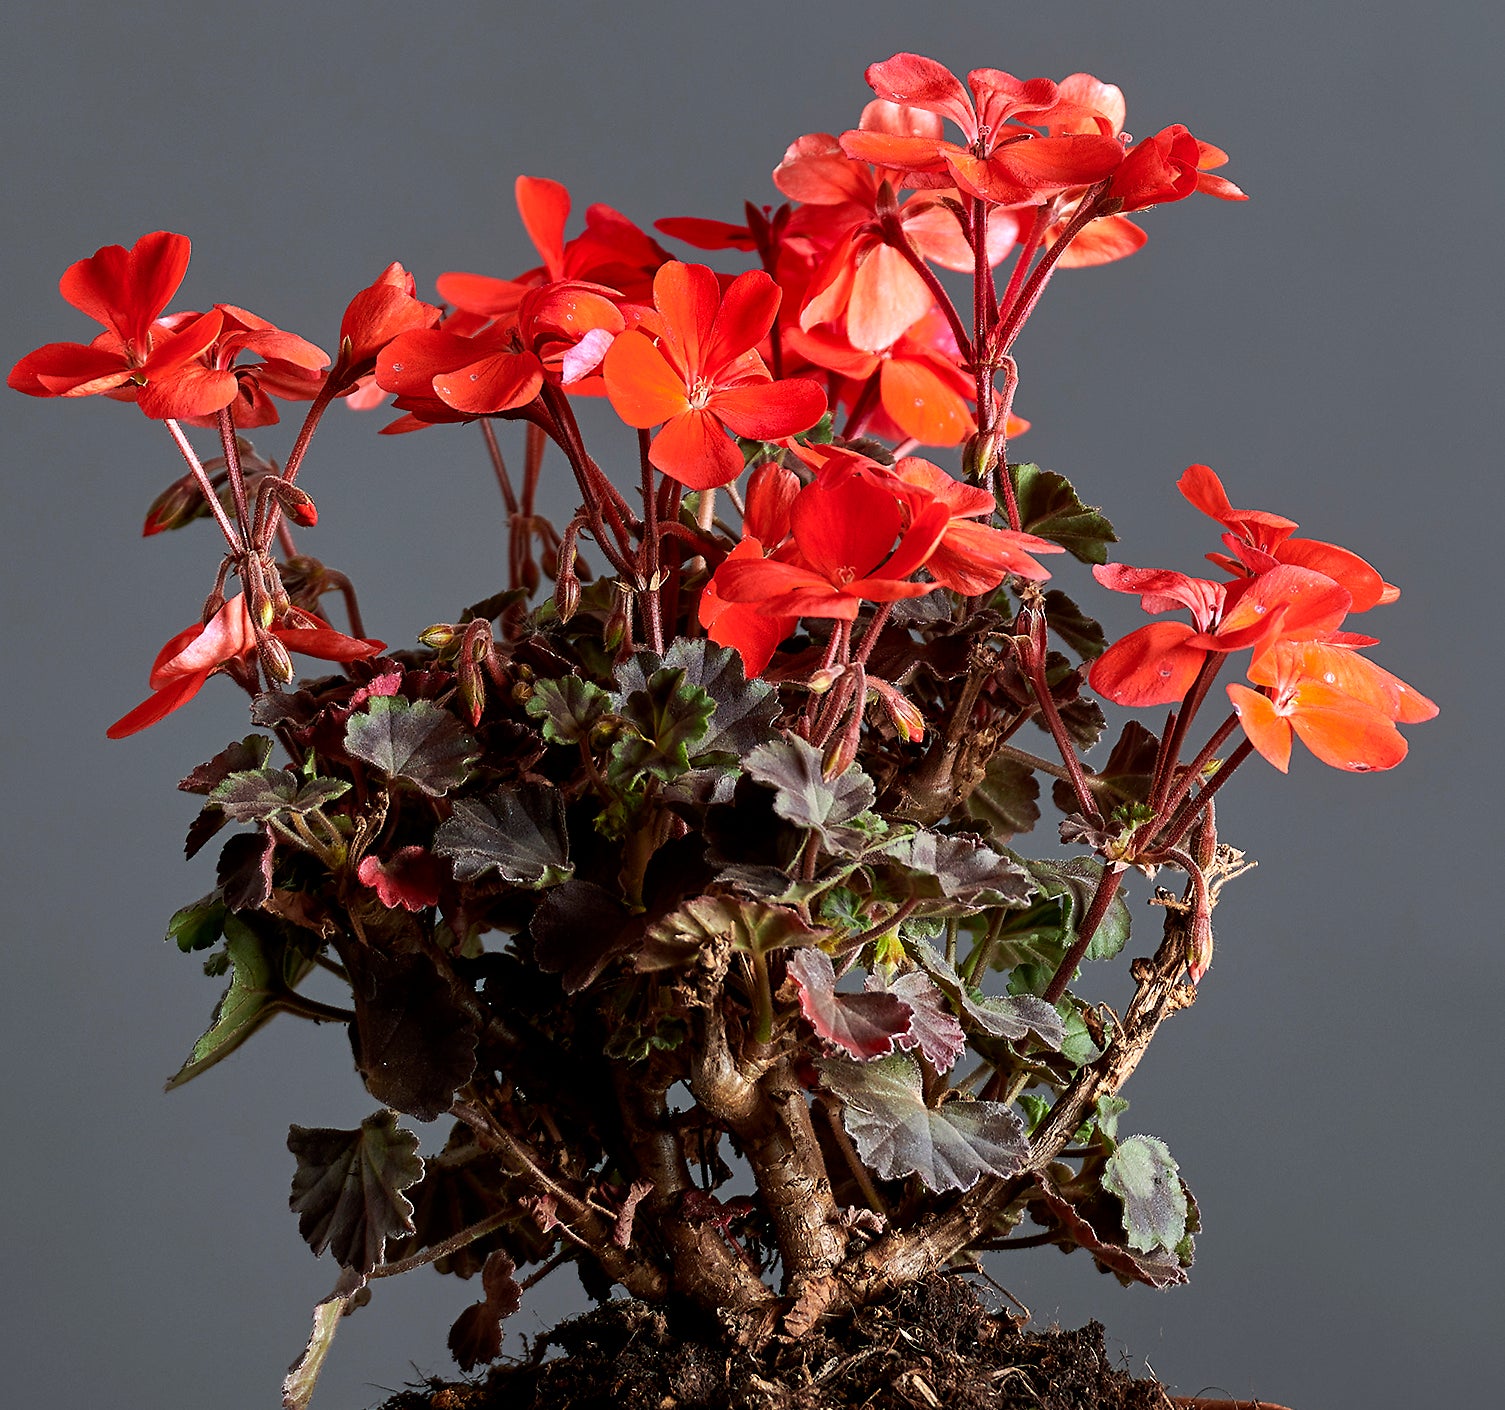 Macro foglie e incantevoli fiori color rosso geranio di Pelargonium 'Red Black Vesuvius'.